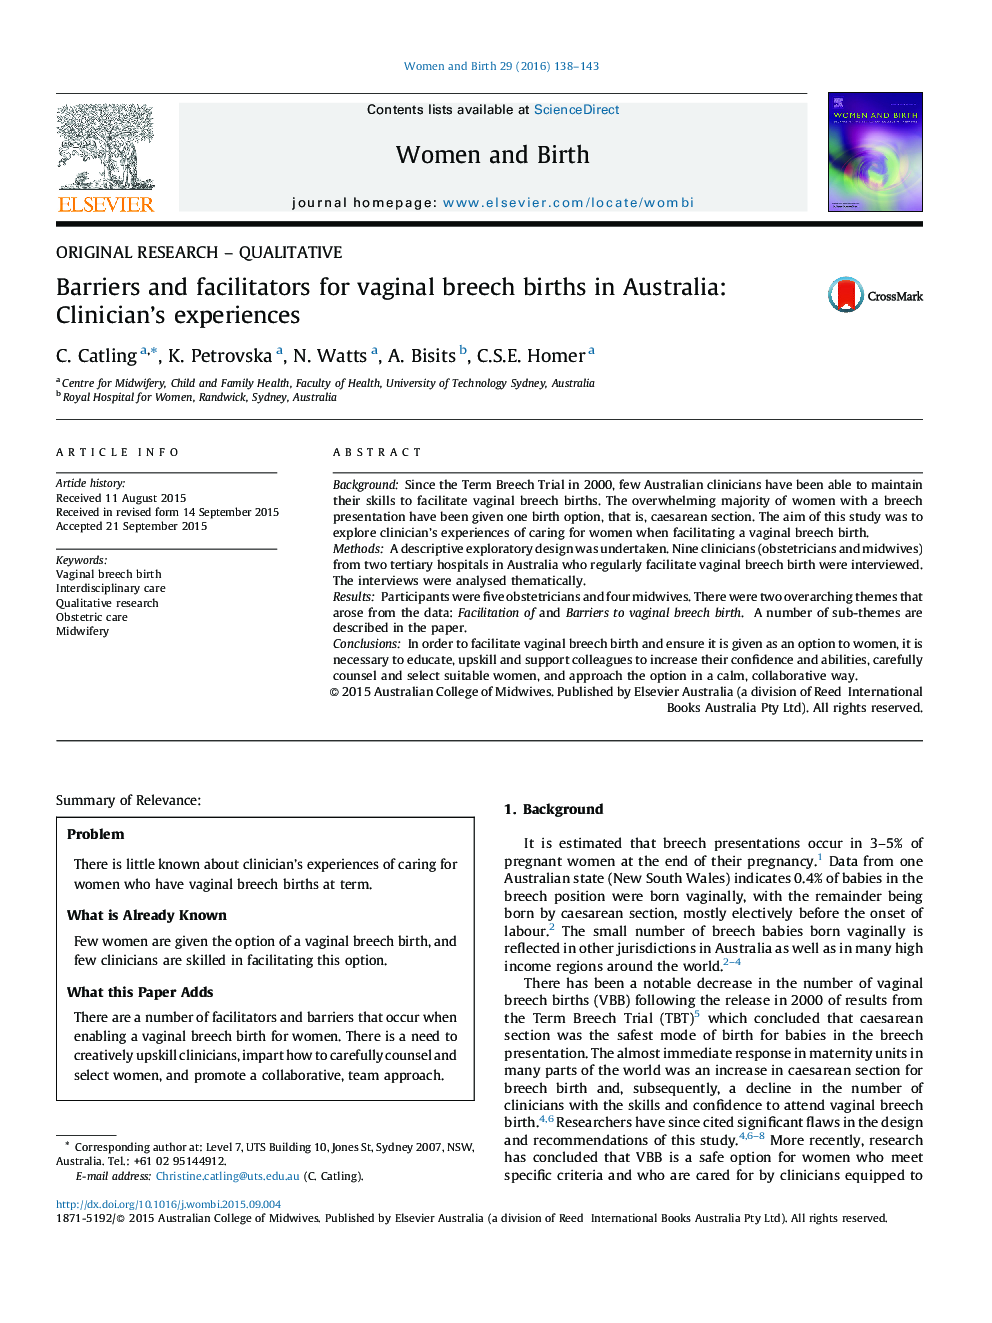 موانع و تسهیل زایمان بریچ واژینال در استرالیا: تجارب درمانگر